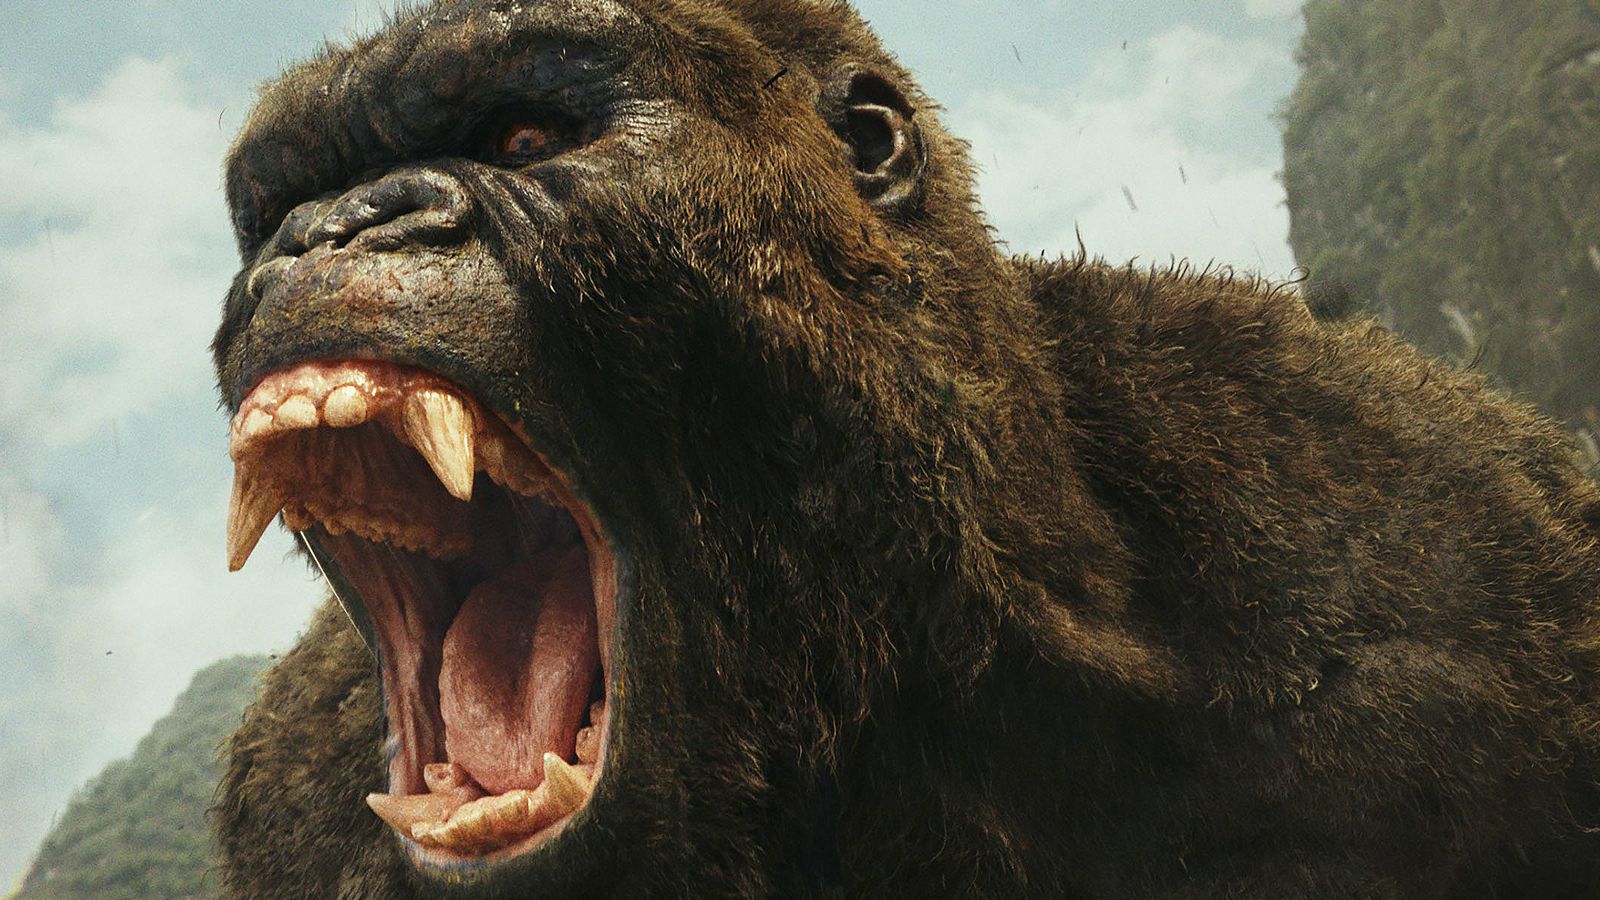 Kong roars in Skull Island